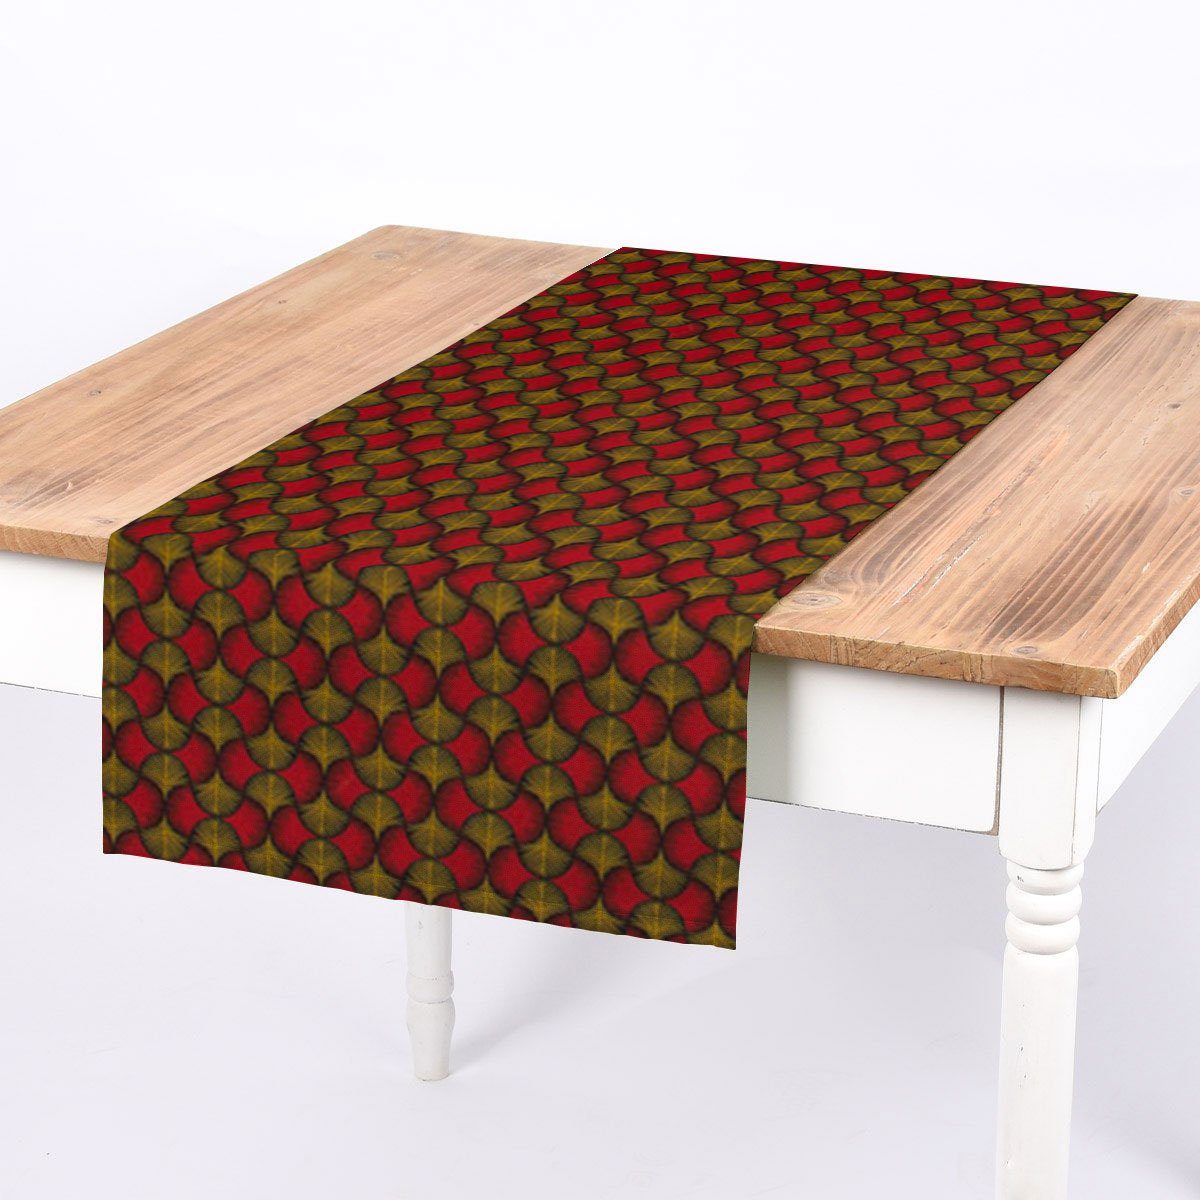 SCHÖNER LEBEN. Tischläufer SCHÖNER LEBEN. Tischläufer Ginkgo Blätter rot ocker schwarz 40x160cm, handmade